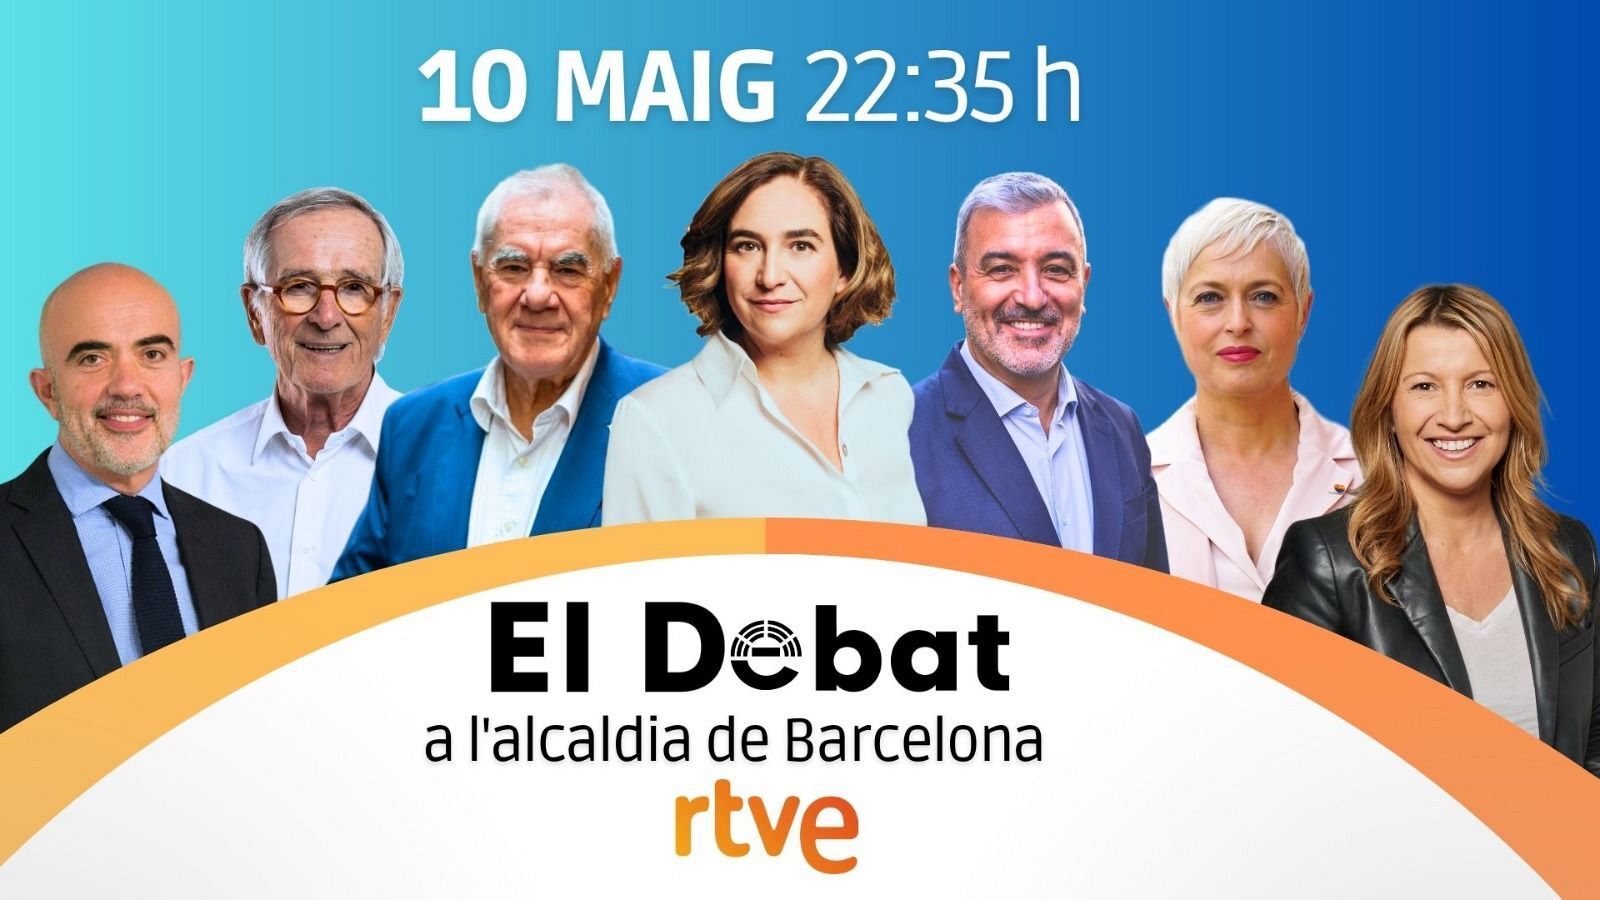  Els candidats a l'alcaldia de Barcelona participen en el debat